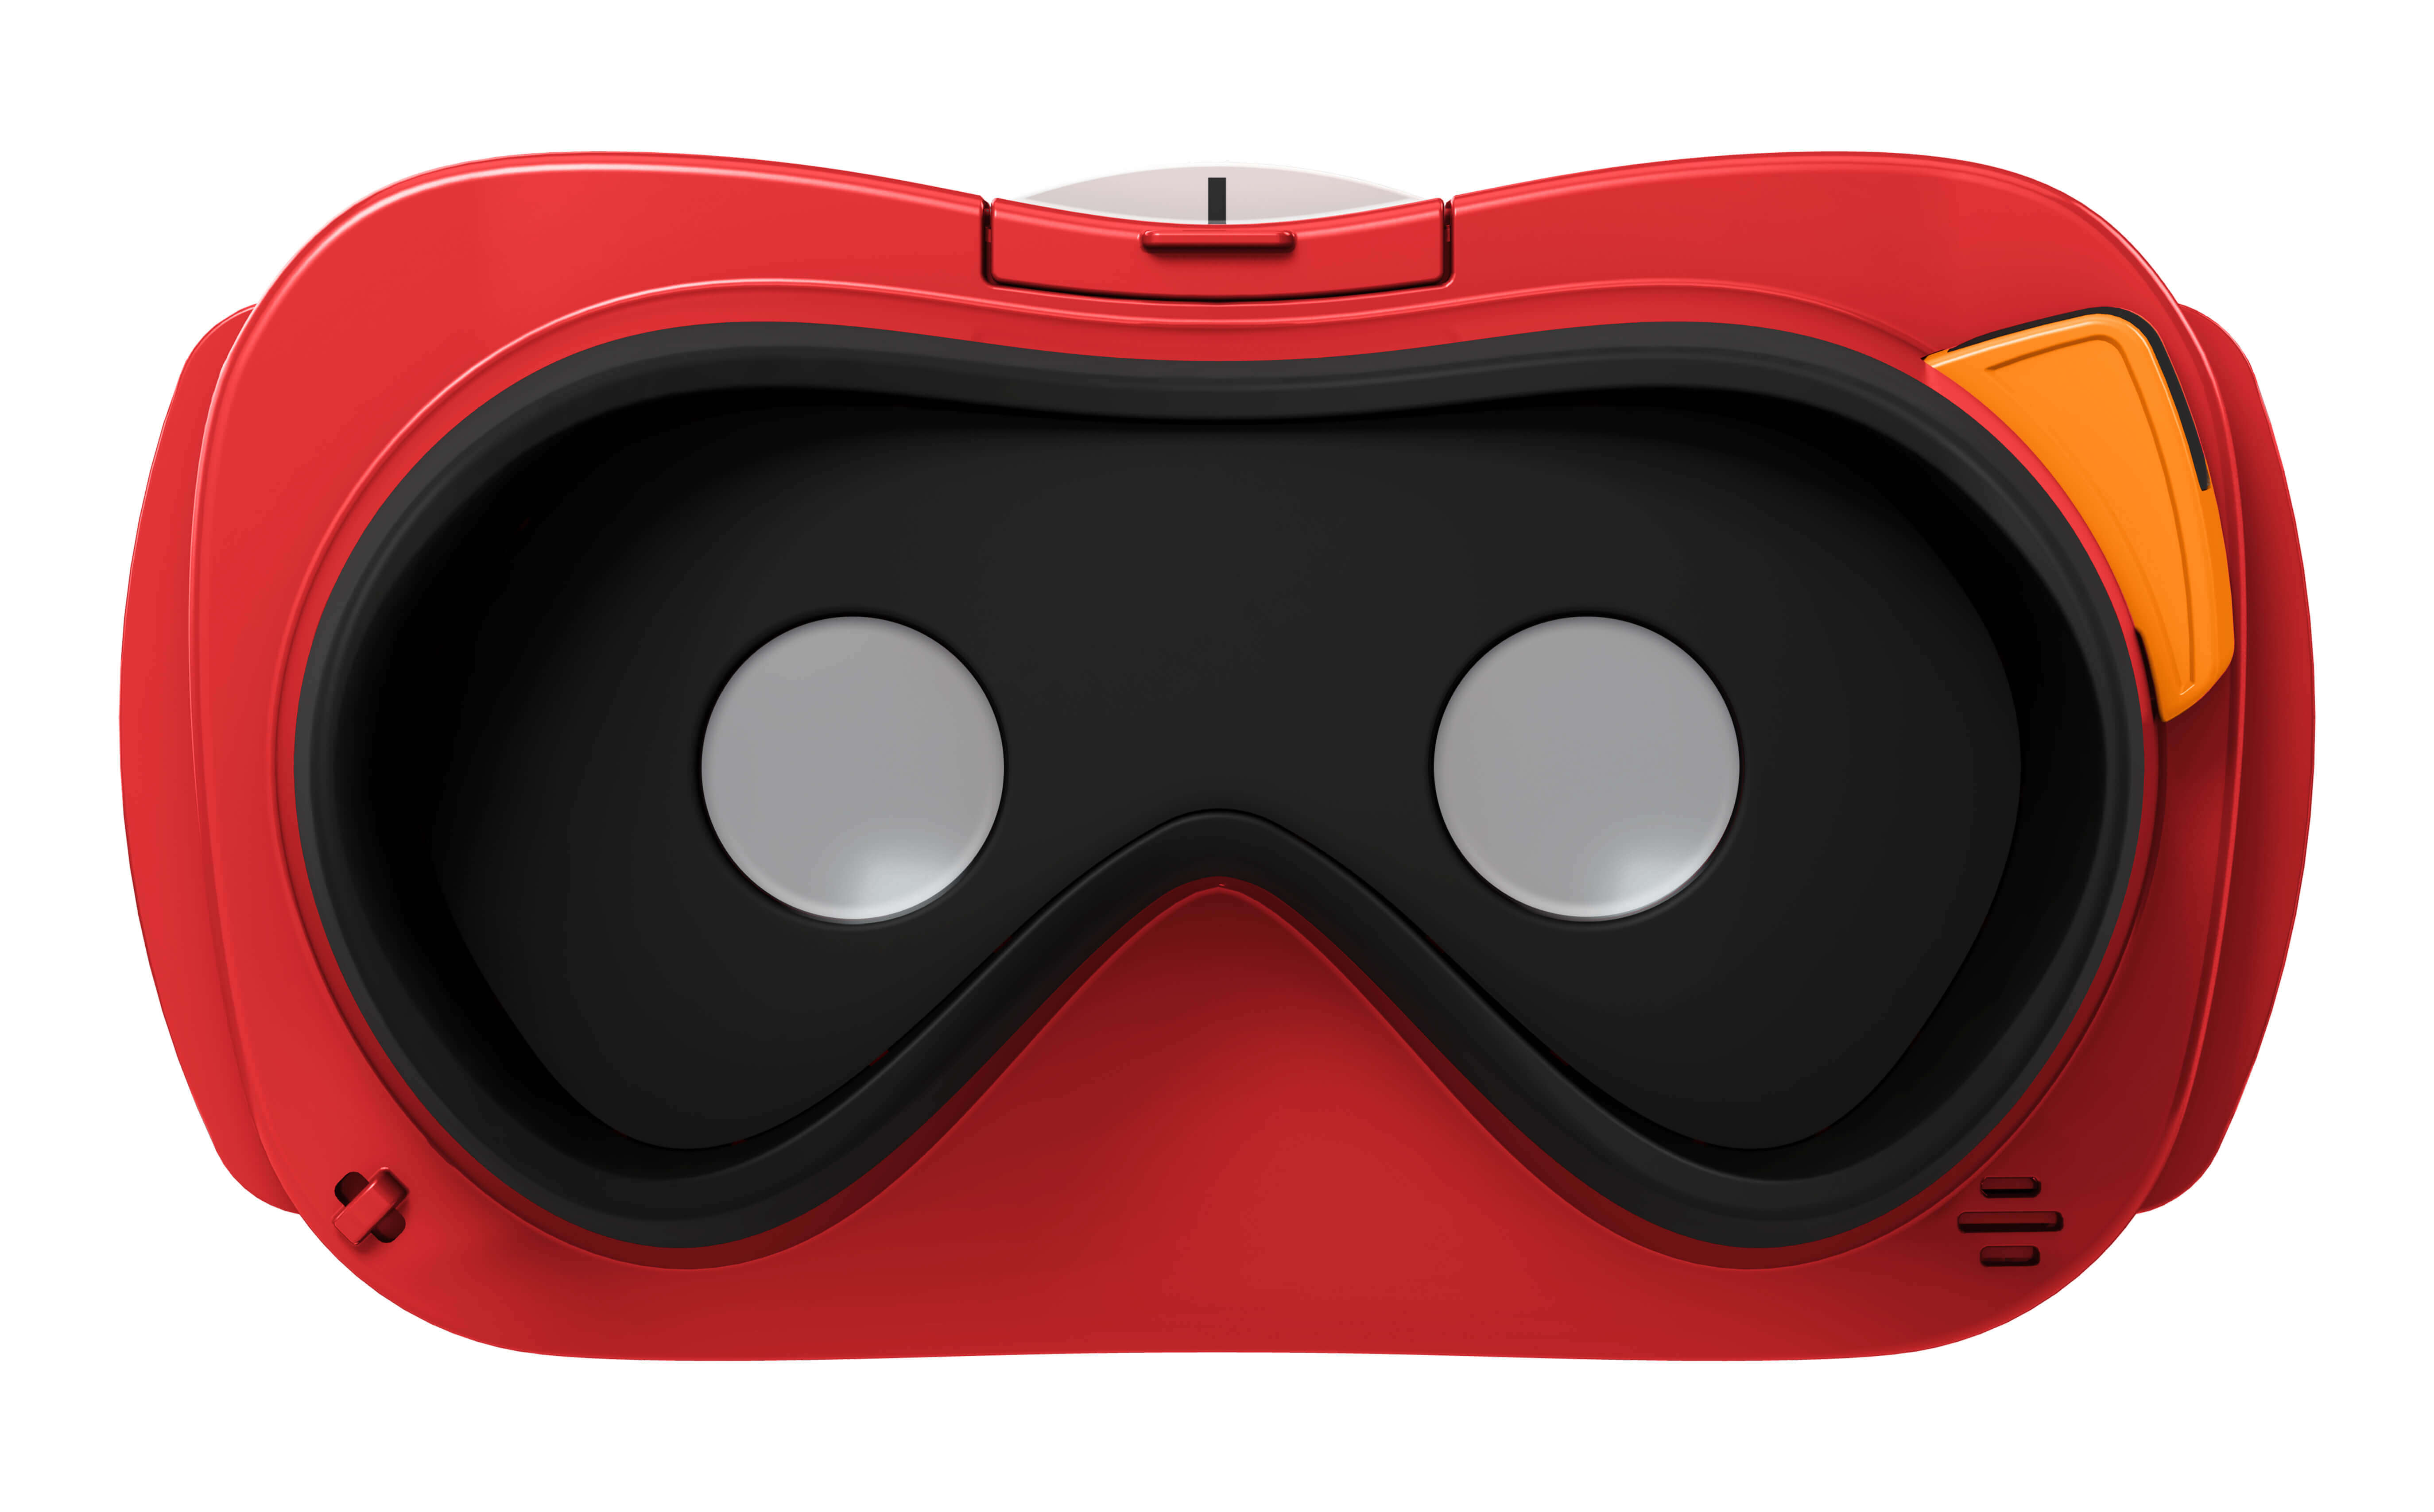 Игрушка vr. Игрушечный VR. Робот игрушка с наушниками. VR очки PNG. Шлем Apple.